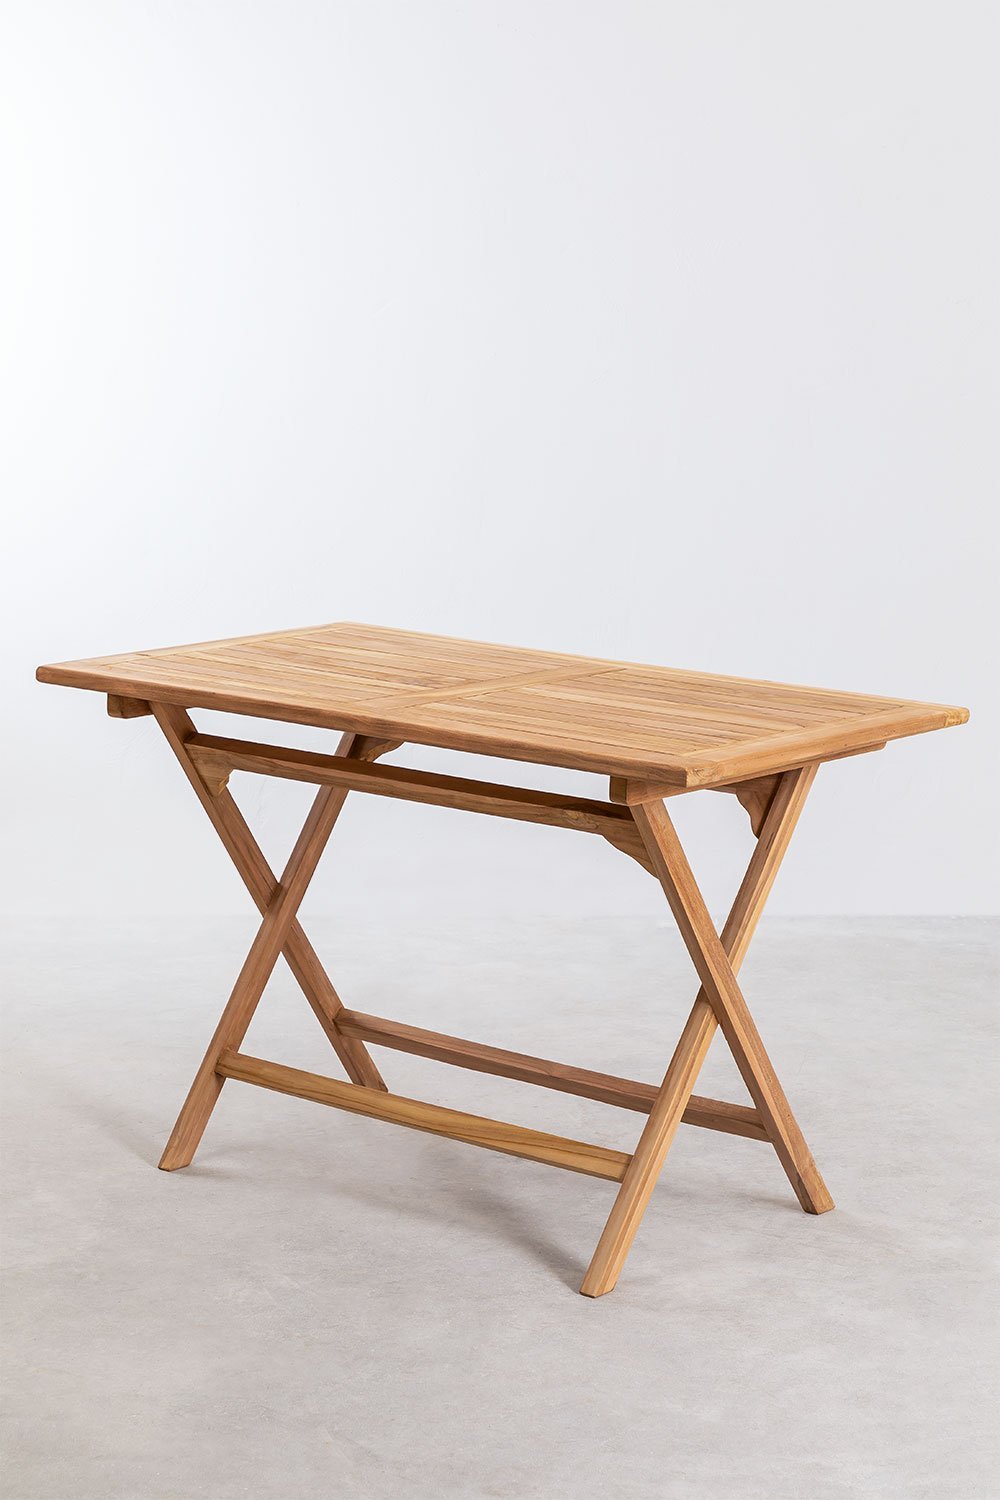 Table pliante en bois - Table pliable - Table pliante bois intérieur